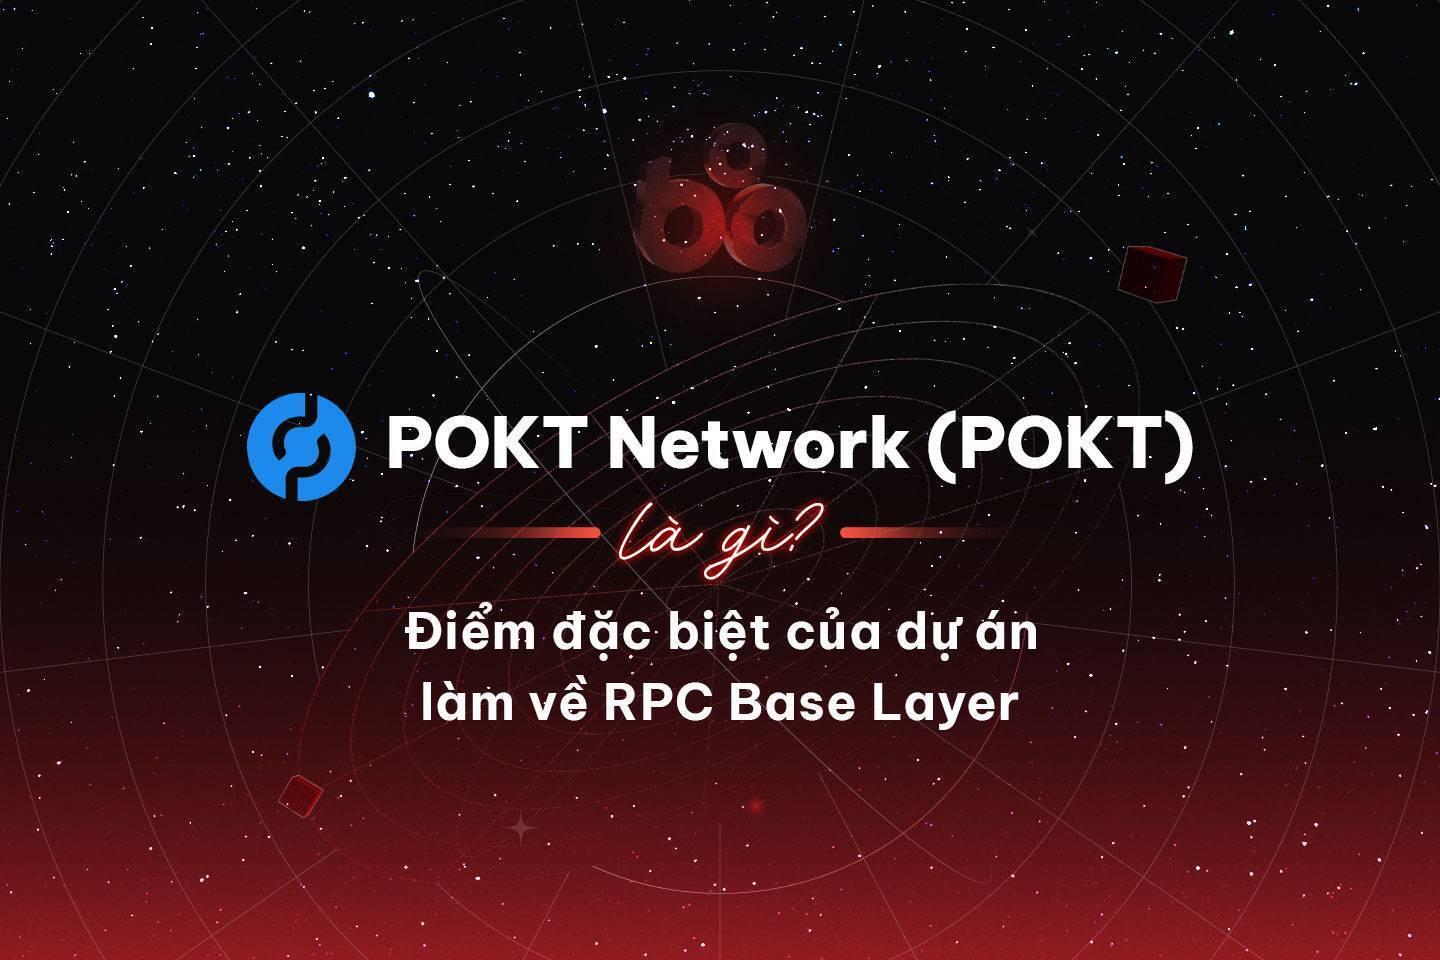 pokt-network-pokt-la-gi-diem-dac-biet -cua-du-an-lam-ve-rpc-base-layer